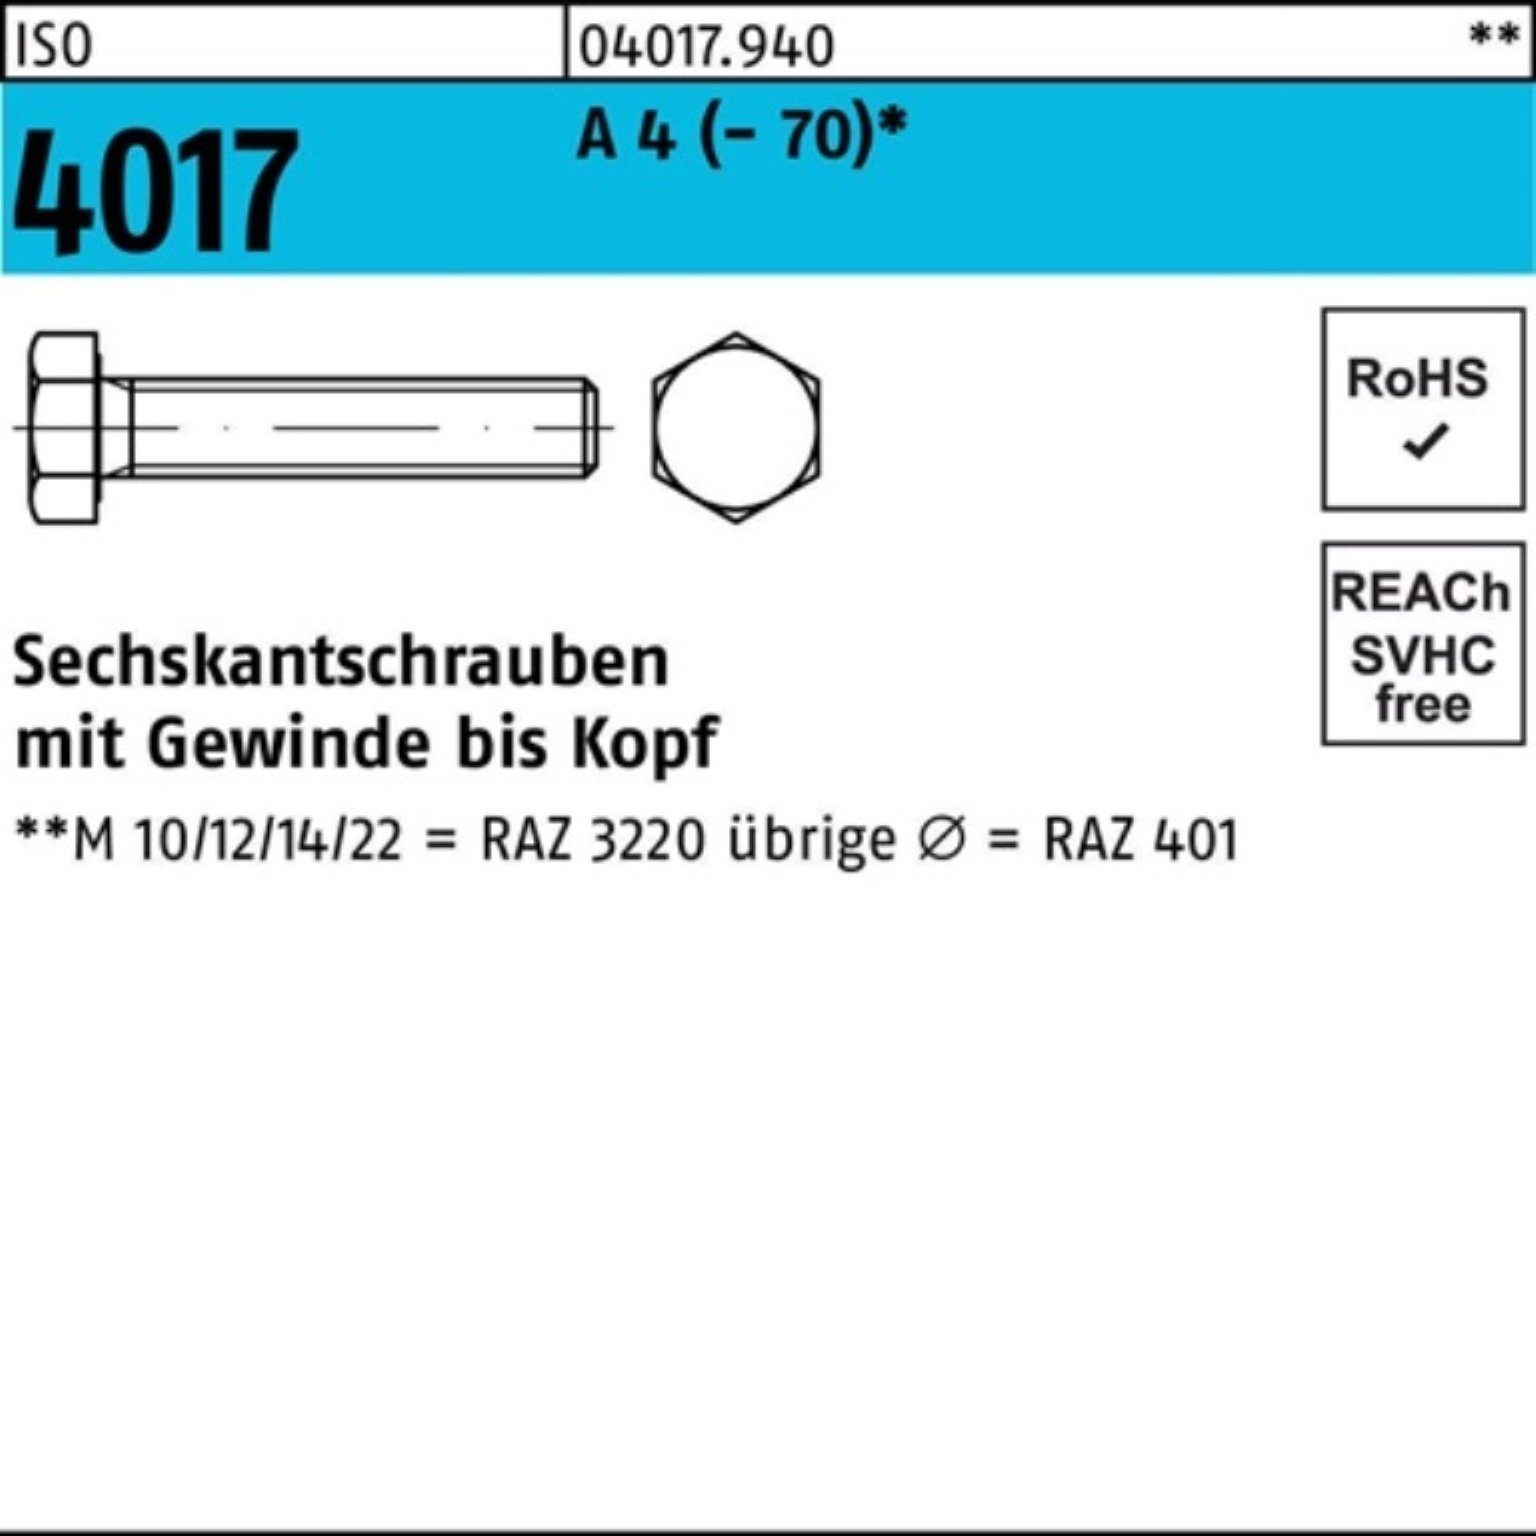 Bufab Sechskantschraube 100er Pack Sechskantschraube ISO 4017 VG M10x 80 A 4 (70) 50 Stück